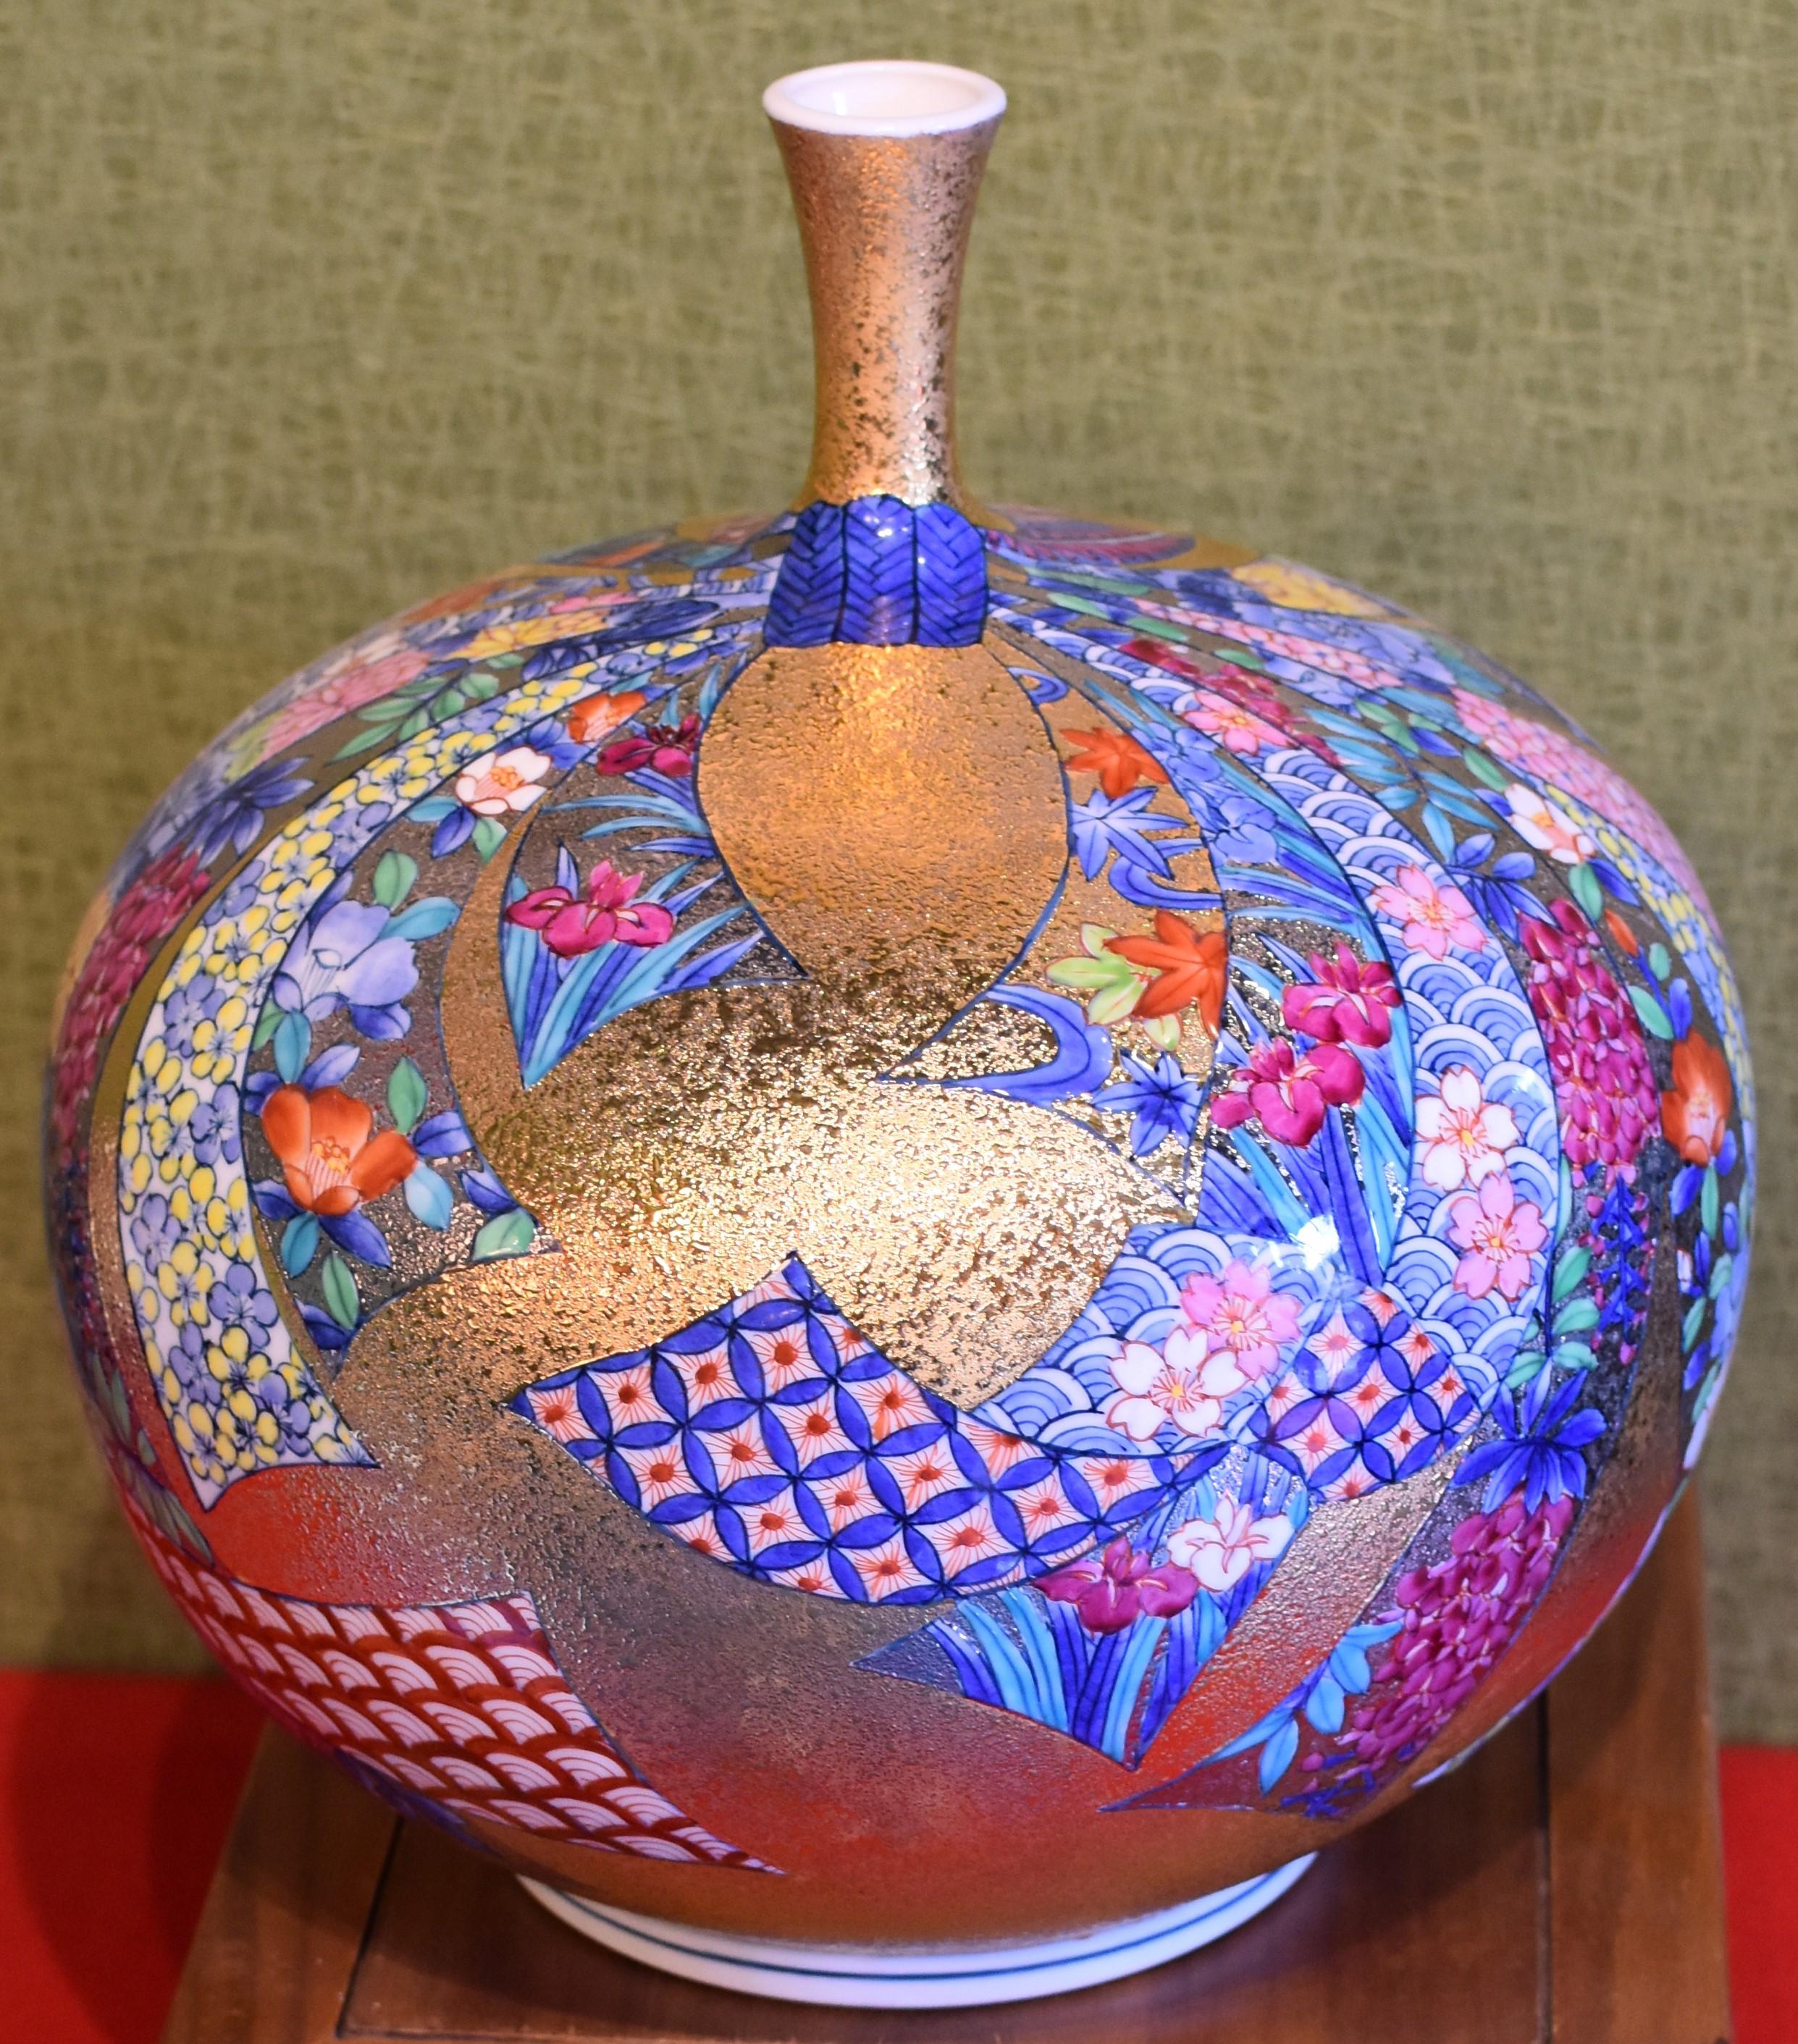 Gilt Japanese Contemporary Red Blue Gilded Porcelain Vase by Imari Master Artist